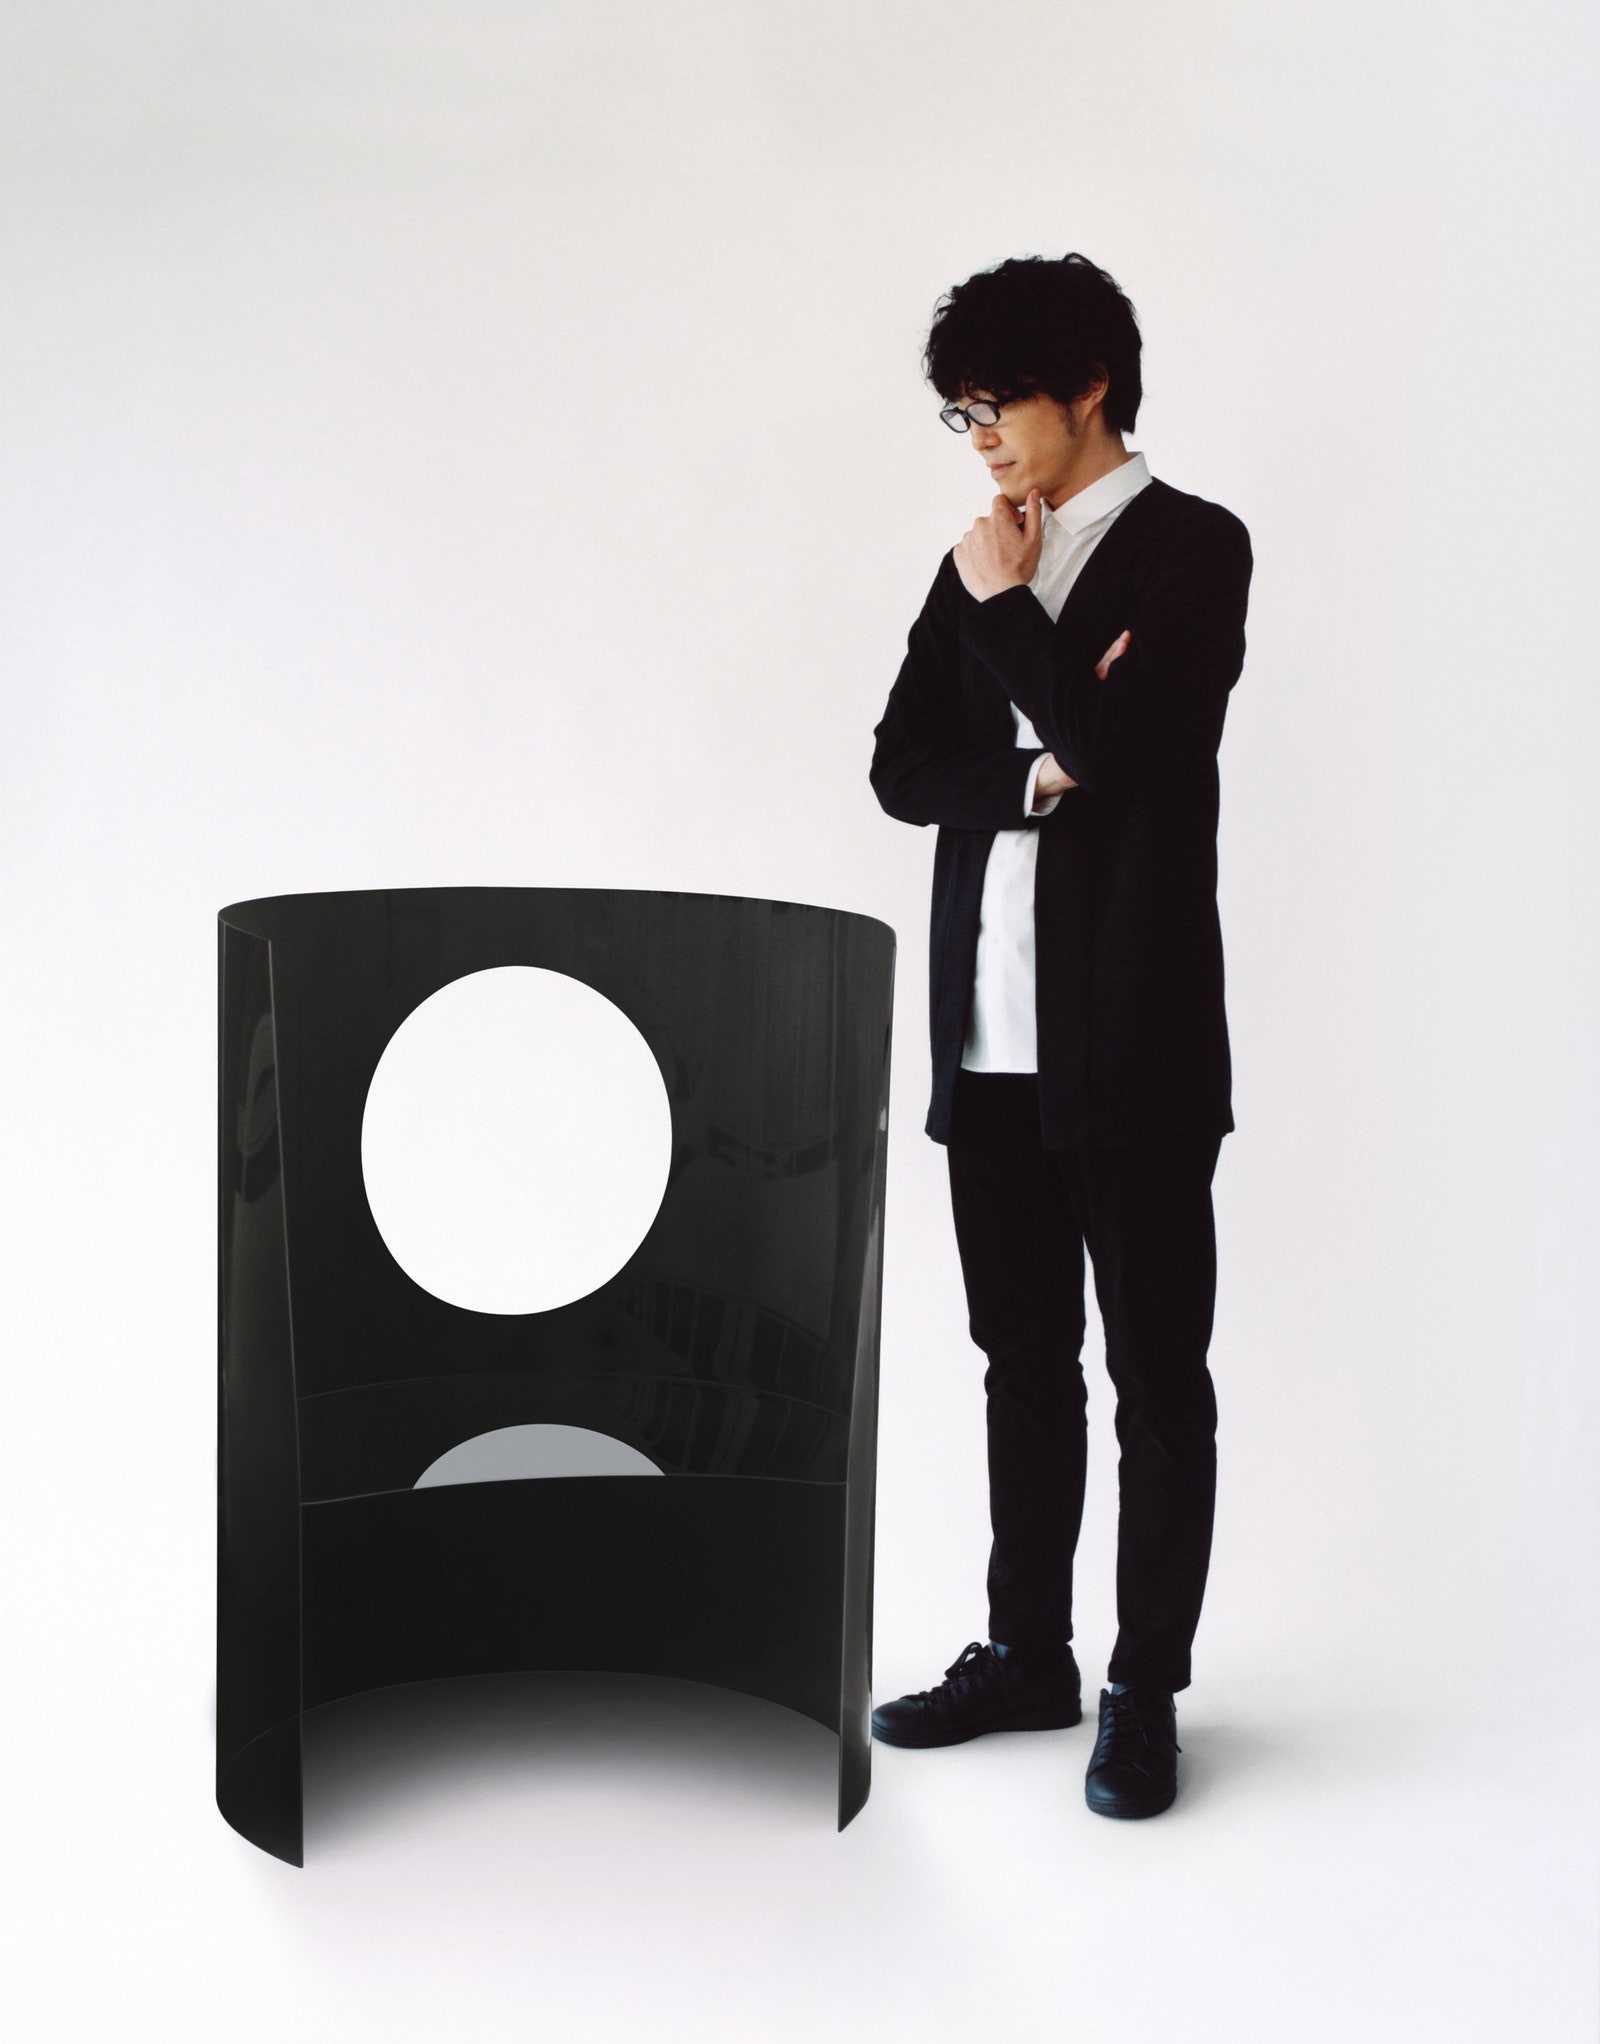 Дизайнер Оки Сато и его минималистичная версия классического стула “Медальон” для выставки Dior в Милане в сентябре 2021го.